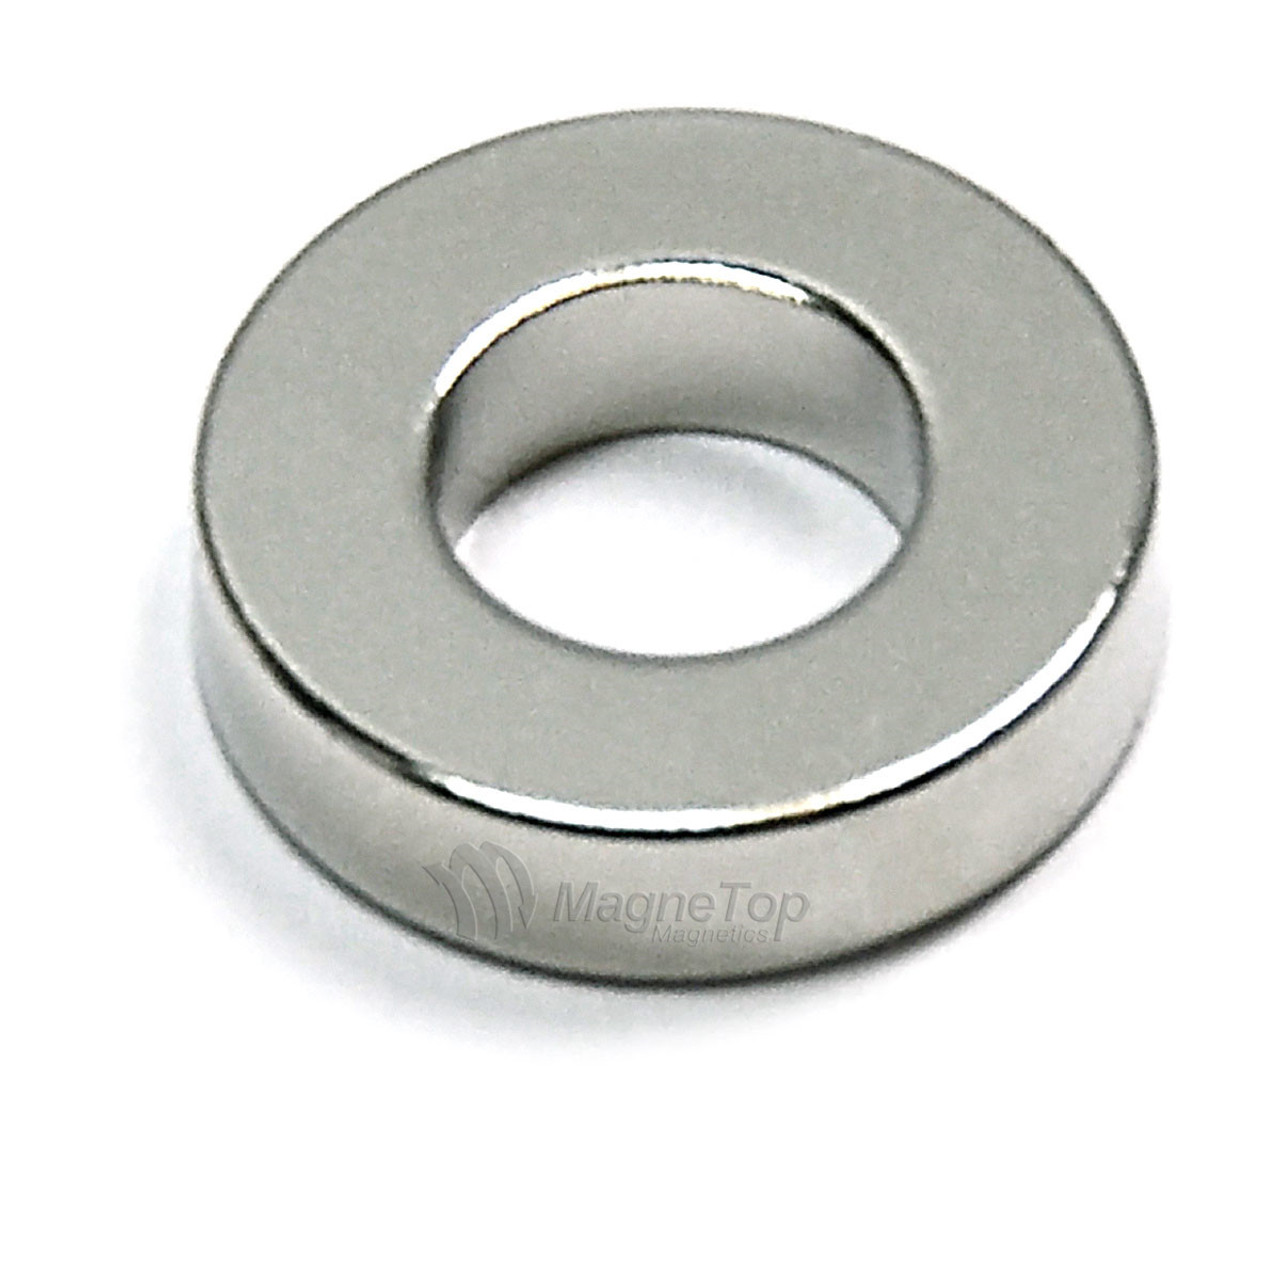 12mm (OD) x 6mm(ID) x 3mm - N52-Neodymium Ring